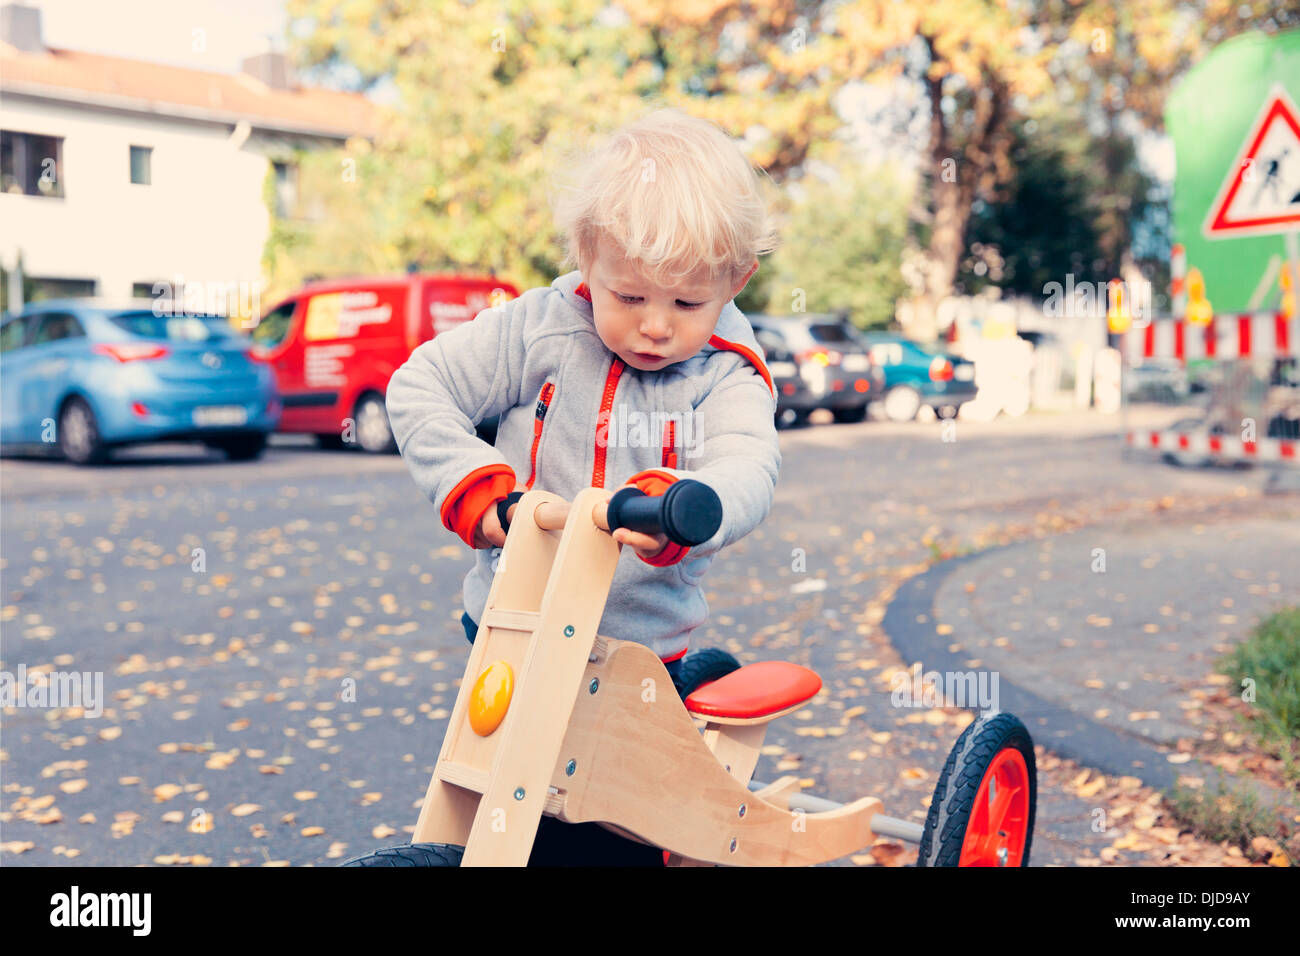 Allemagne, Bonn, petit garçon avec tricycle en bois Banque D'Images